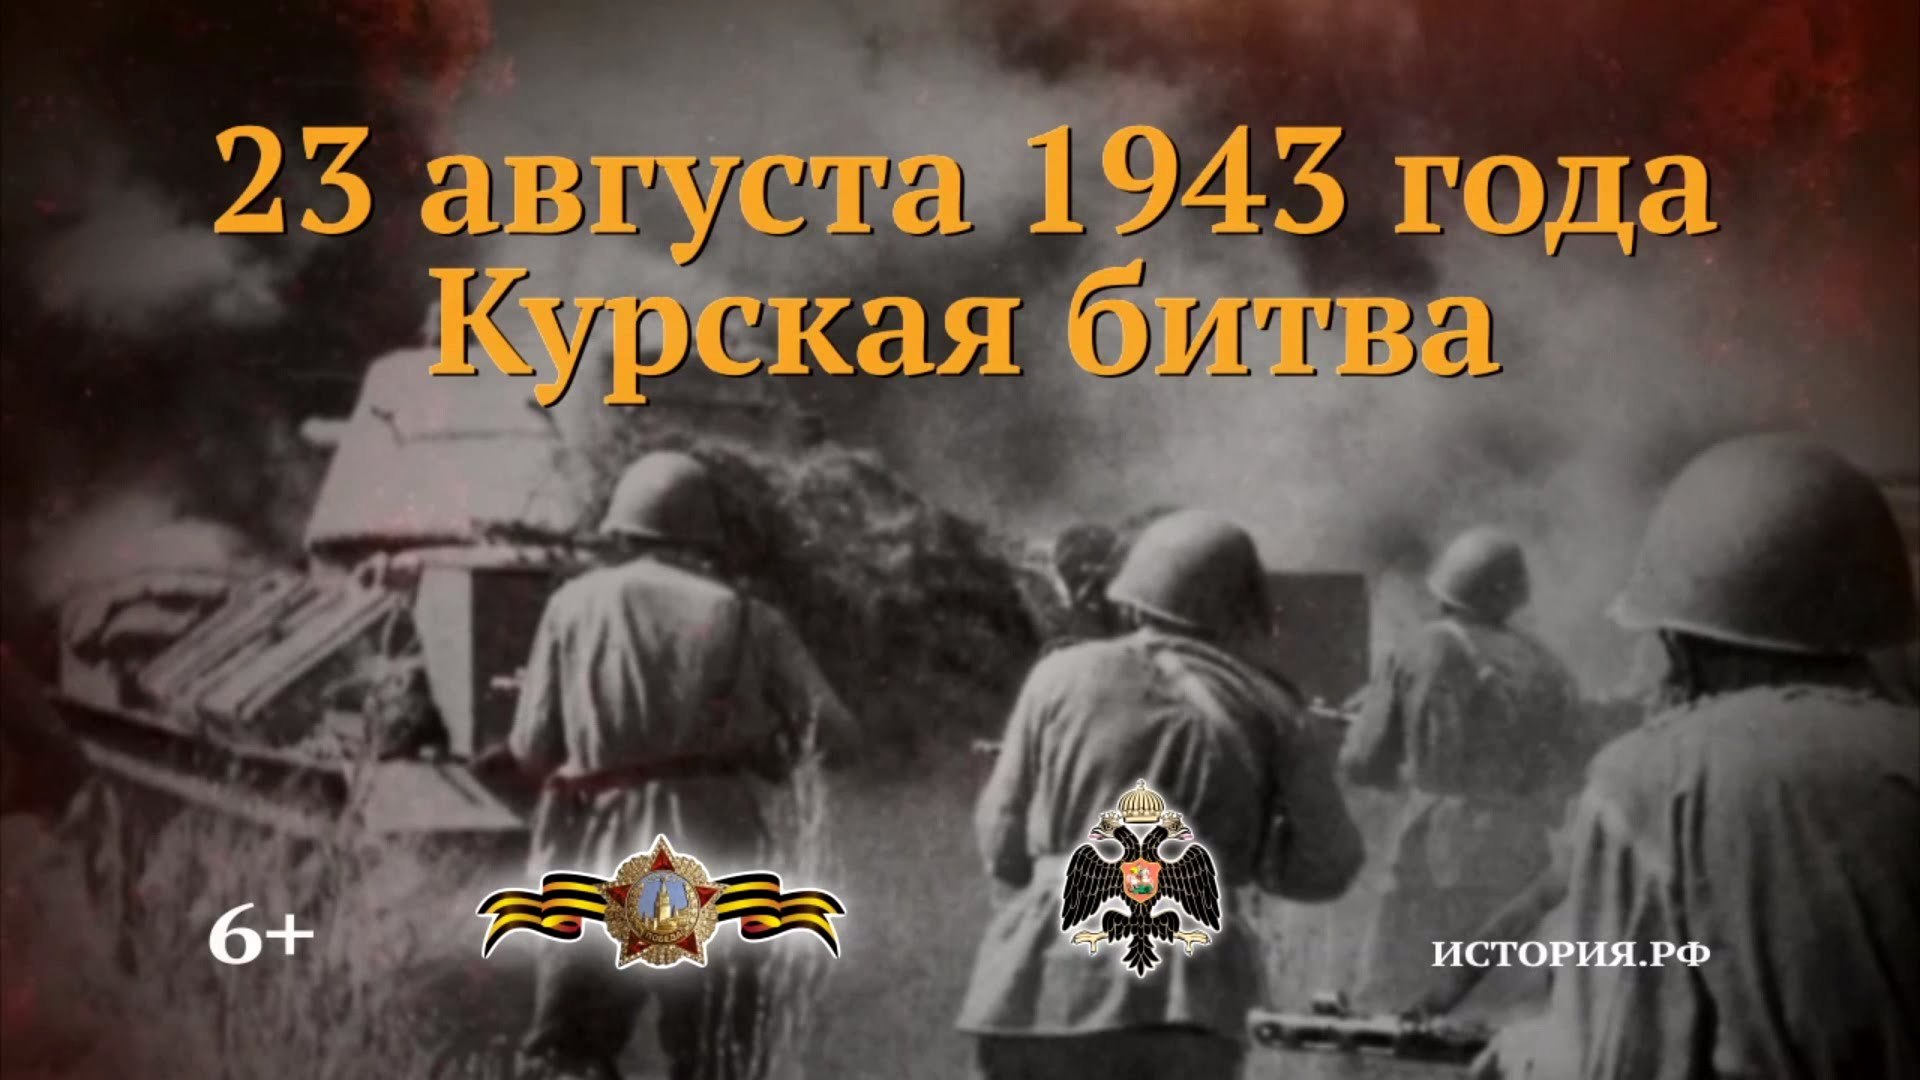 Дни воинской славы август. 23 Августа день воинской славы России Курская битва. Курская битва 23 августа памятная Дата. 23 Августа 1943 года Курская битва. Курская битва июль август 1943.